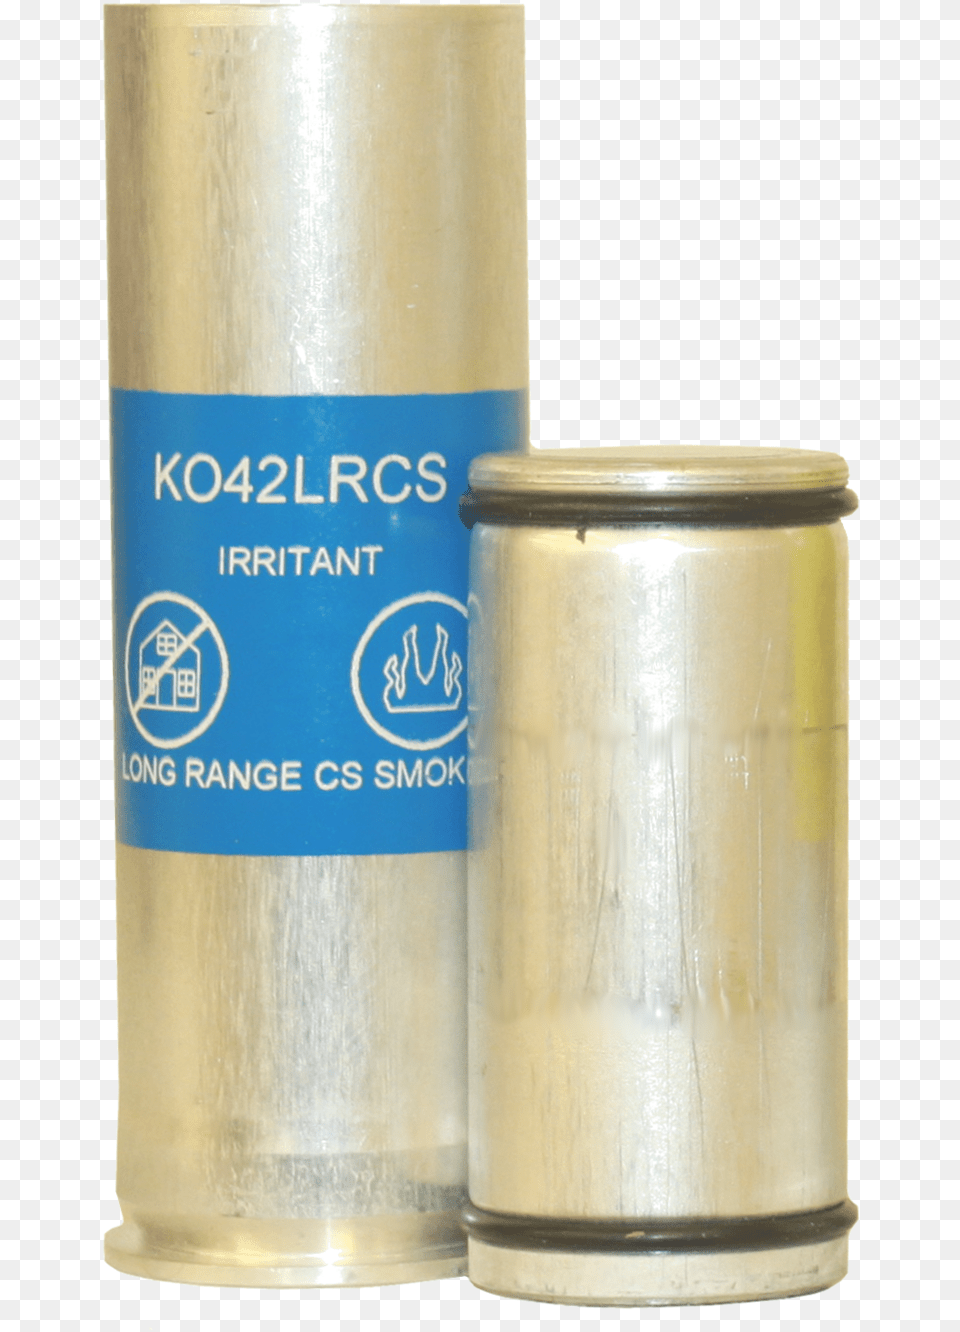 Long Range Smoke K042lrcs Bottle, Cylinder, Can, Tin, Alcohol Free Png